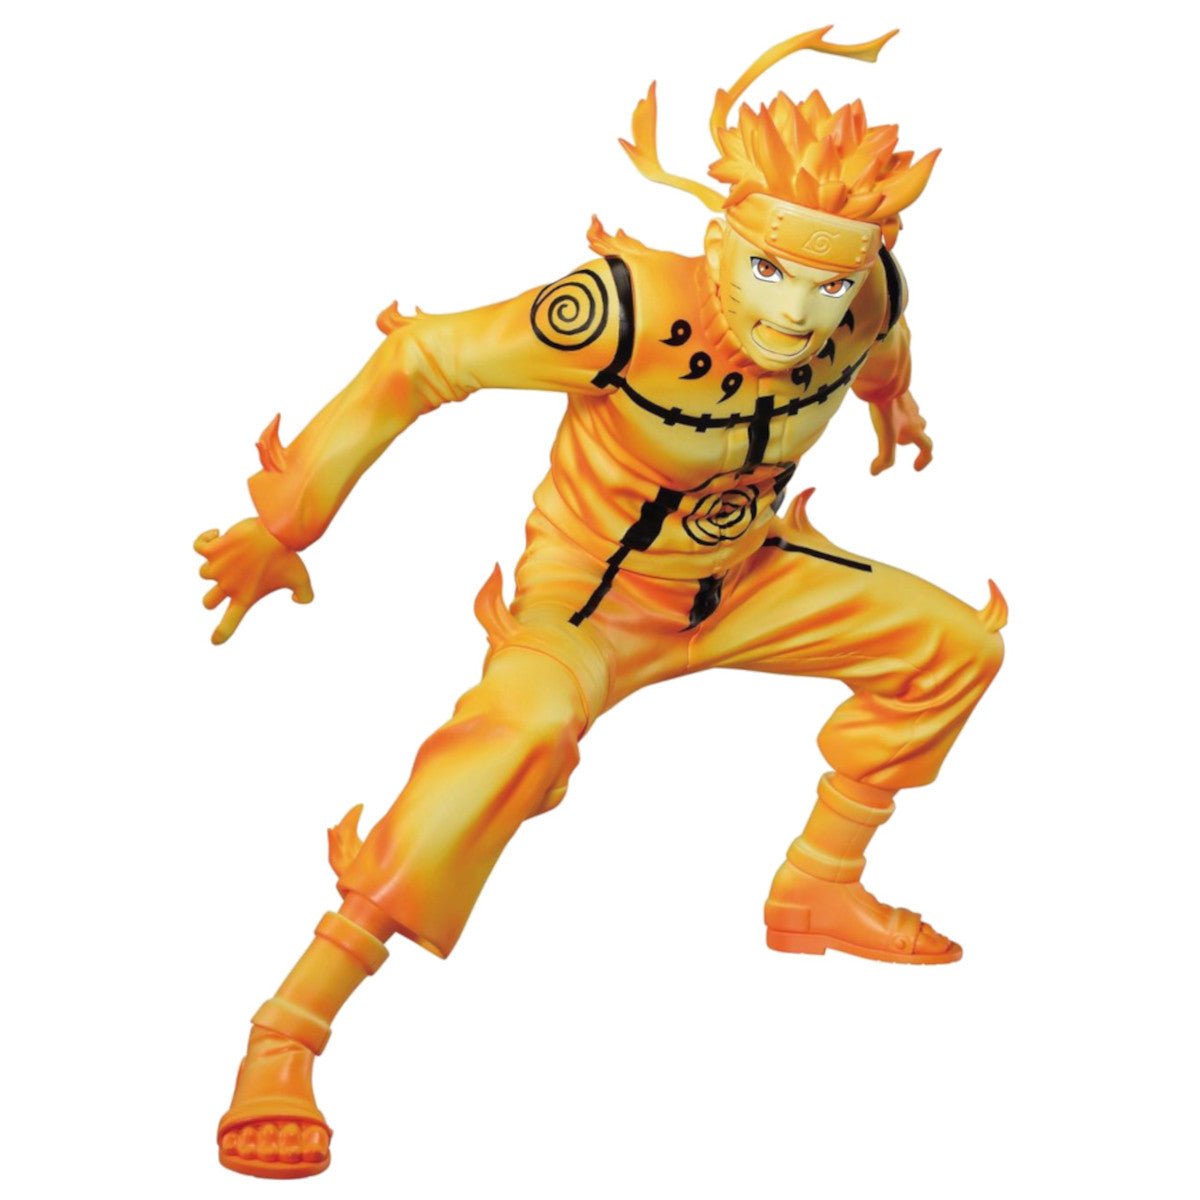 Naruto: Shippuden Naruto Uzumaki III Vibration Stars Figure - Bandai - 1